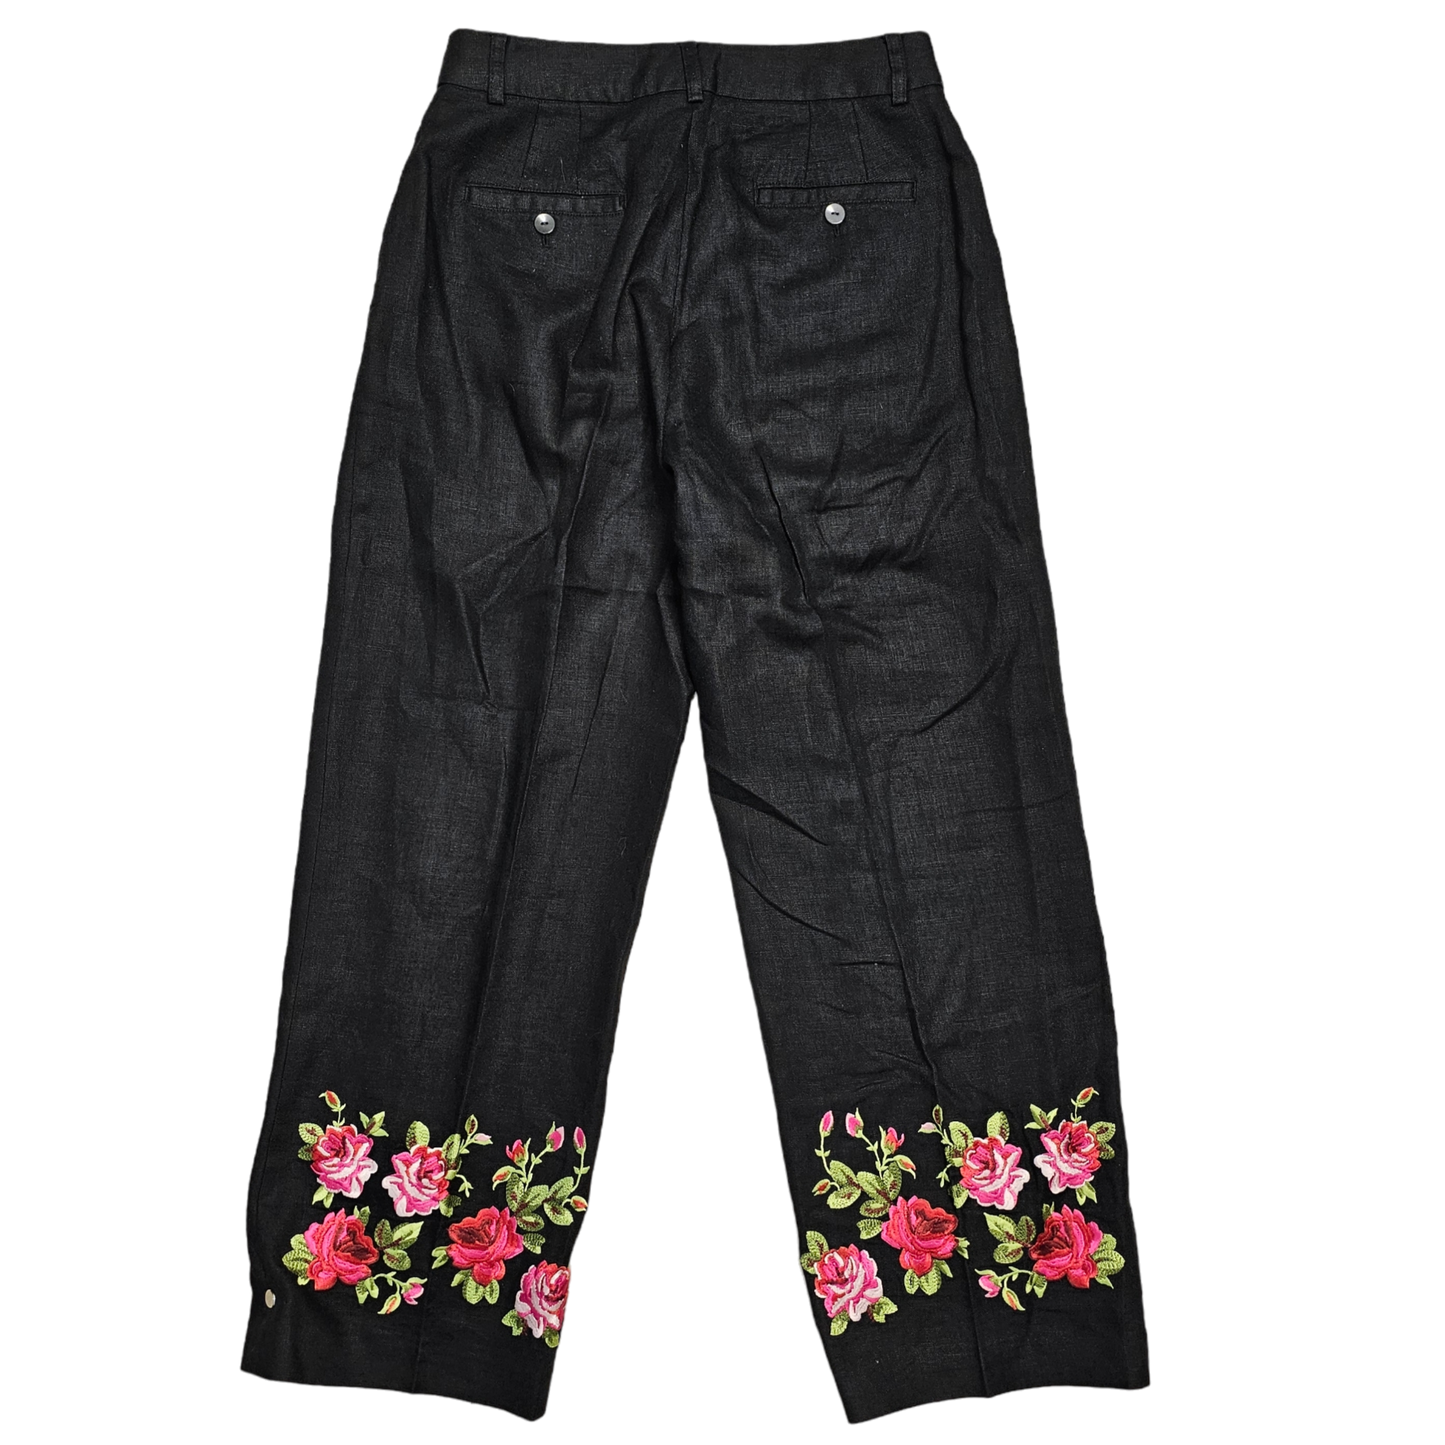 Pants Work/dress By Jillian Jones Size: 4